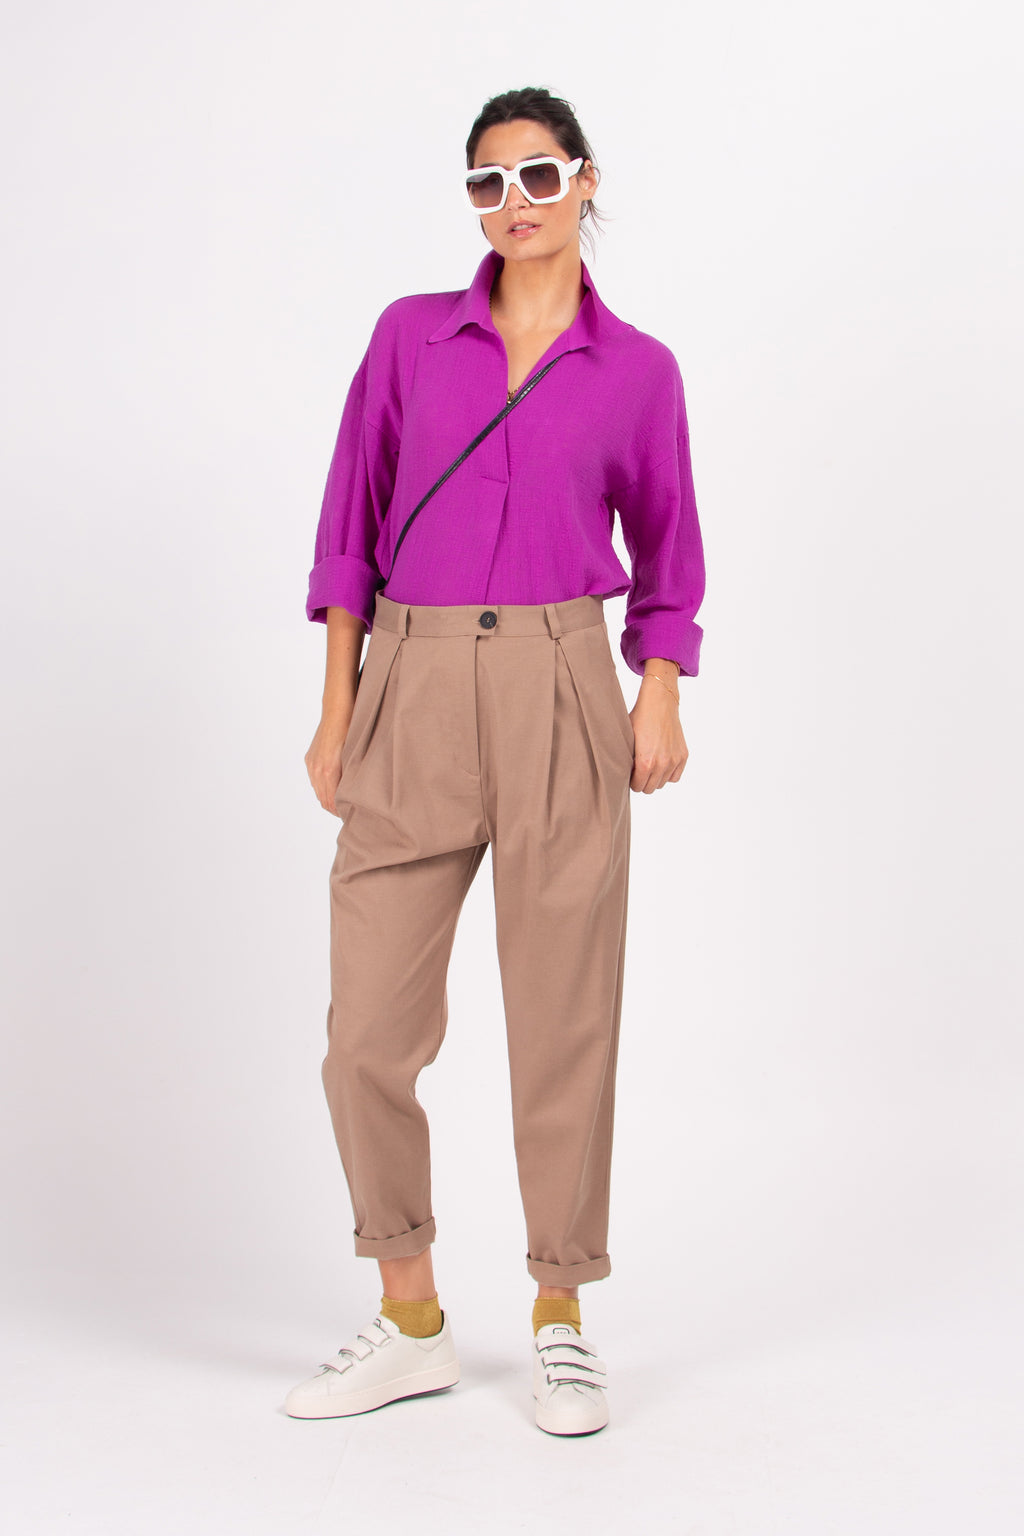 Daan purple cotton blouse